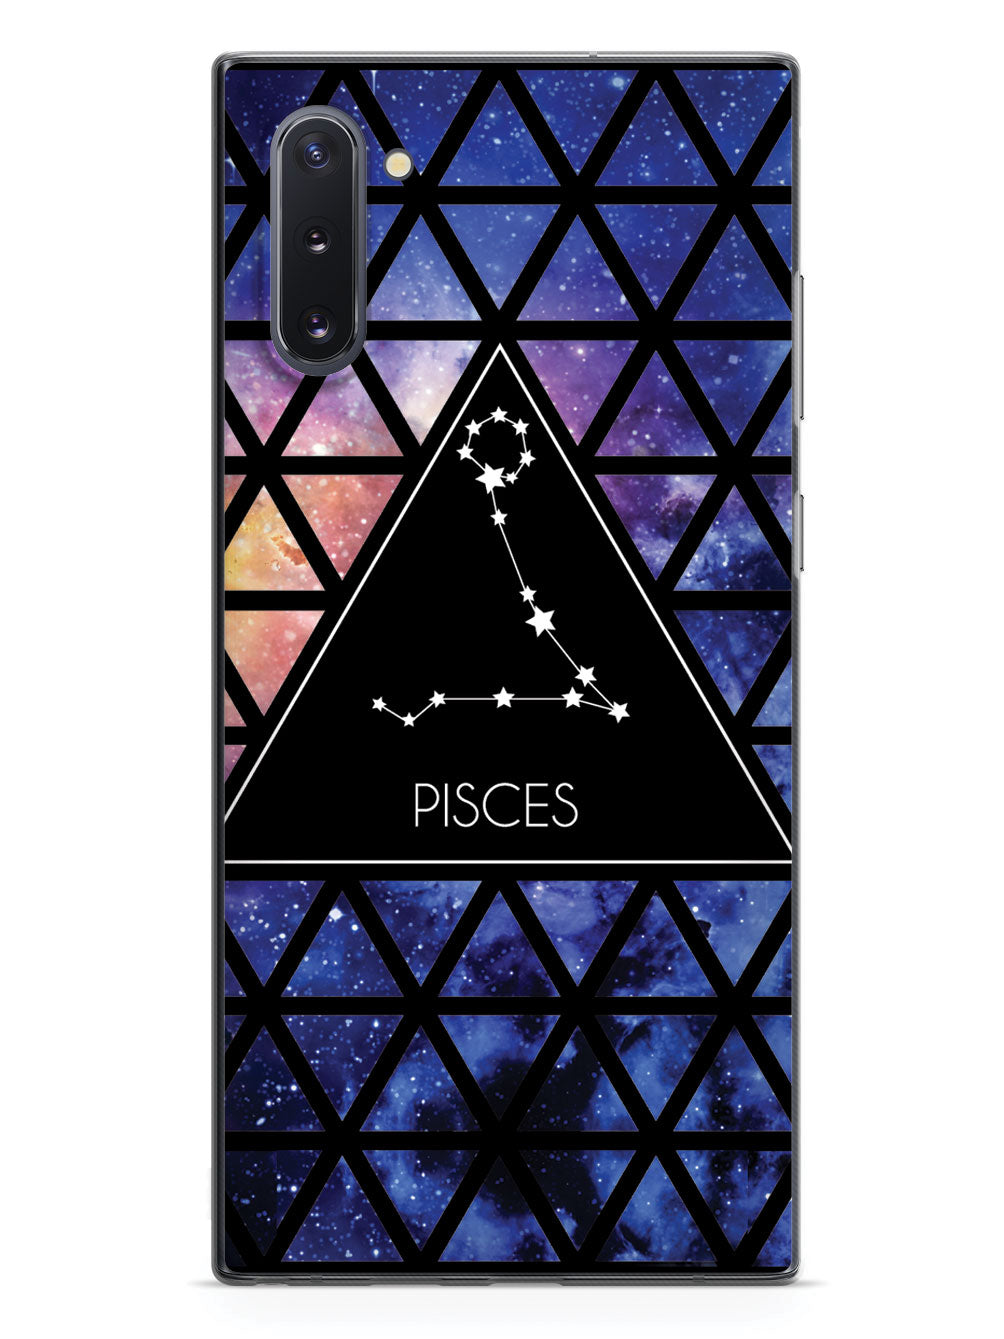 Zodiac Constellation - Pisces Case